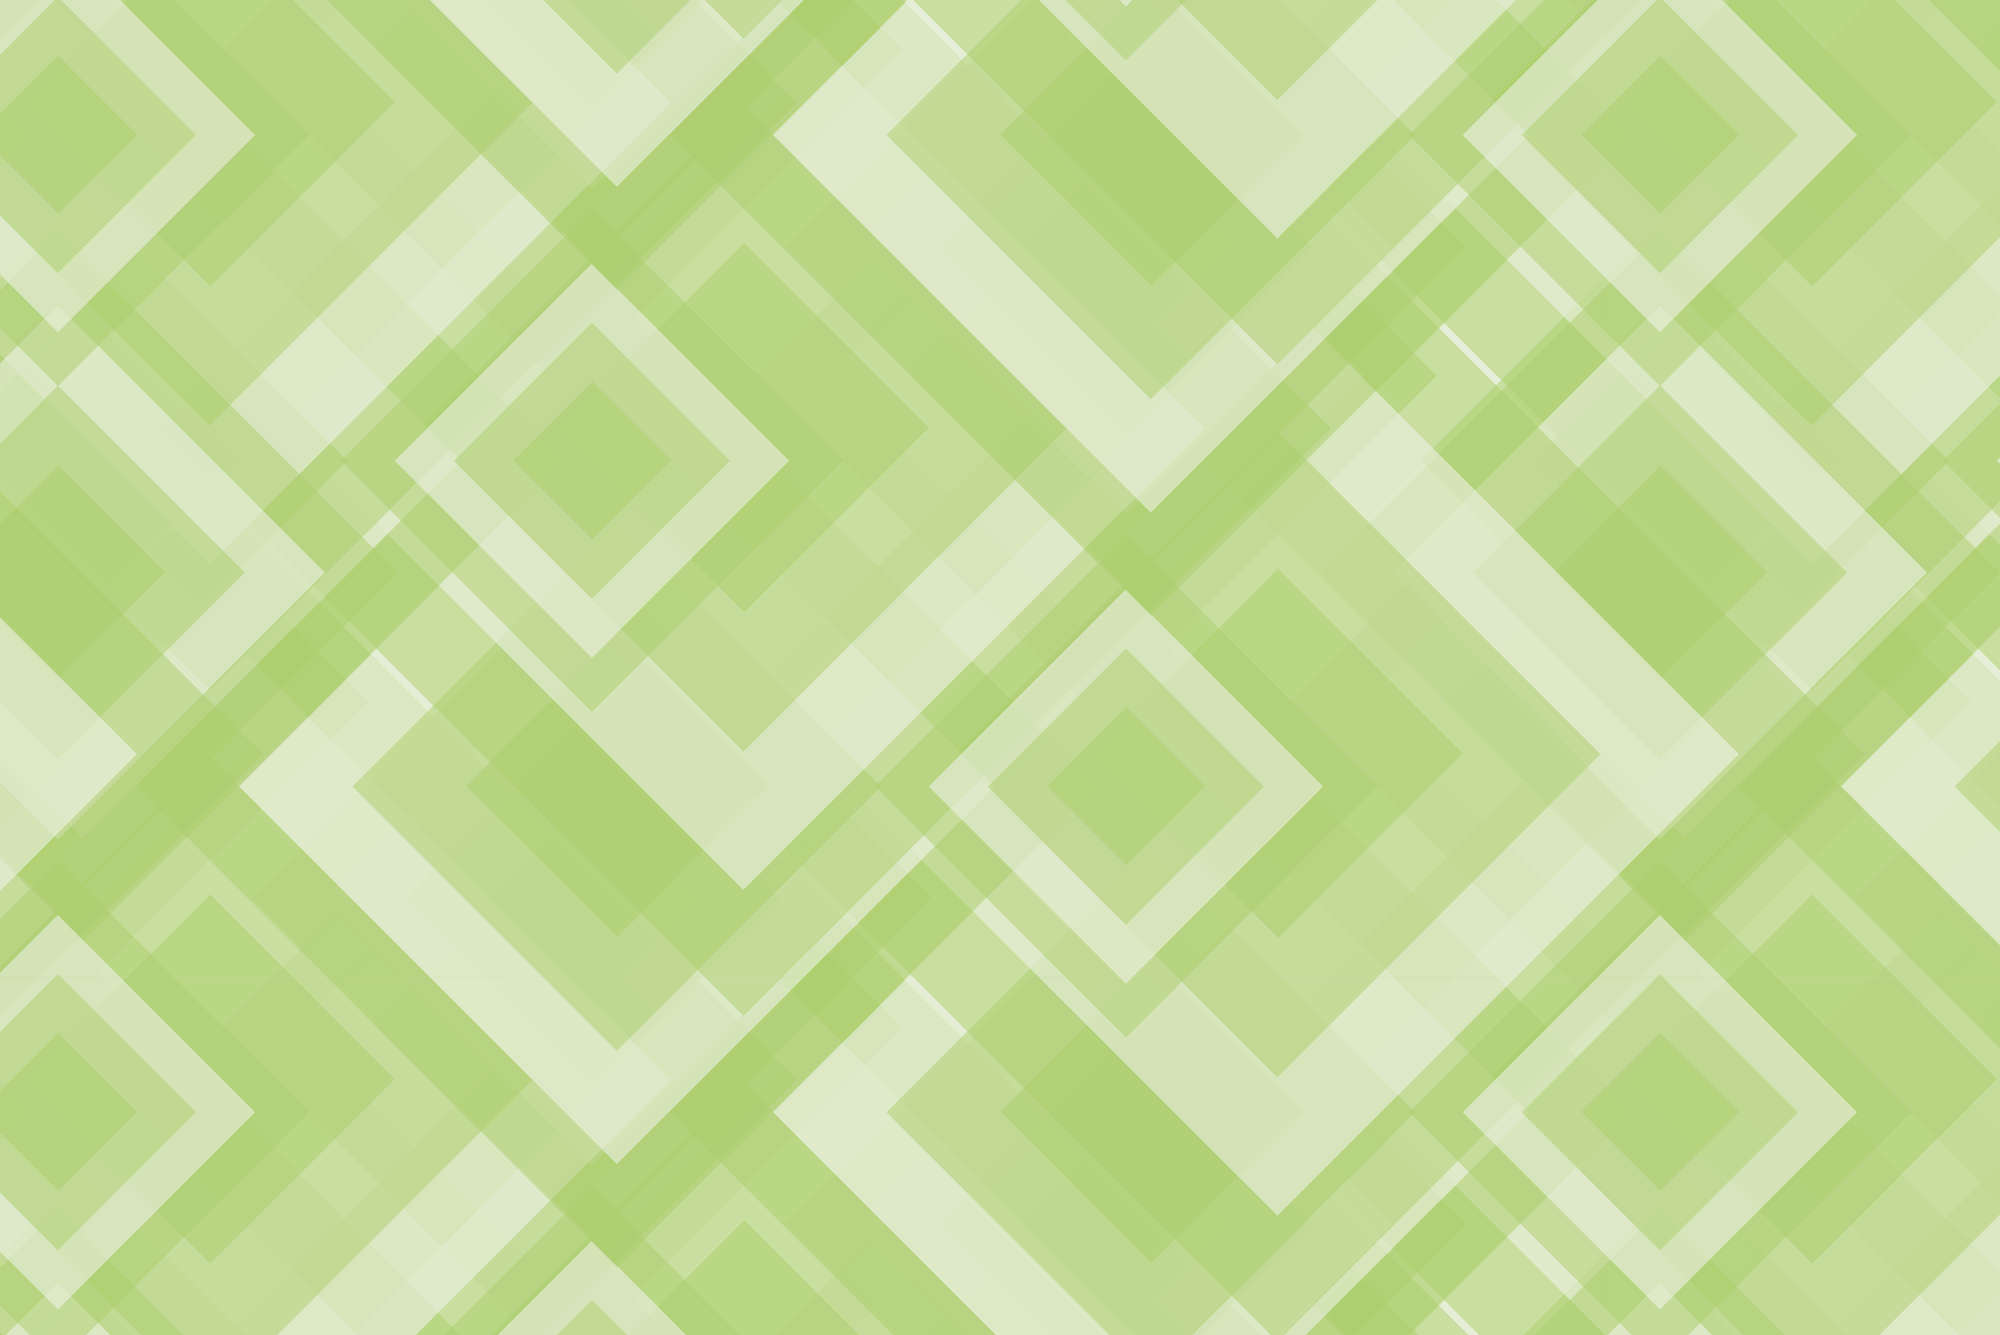             Designbehang overlappende vierkanten groen op premium glad vlies
        